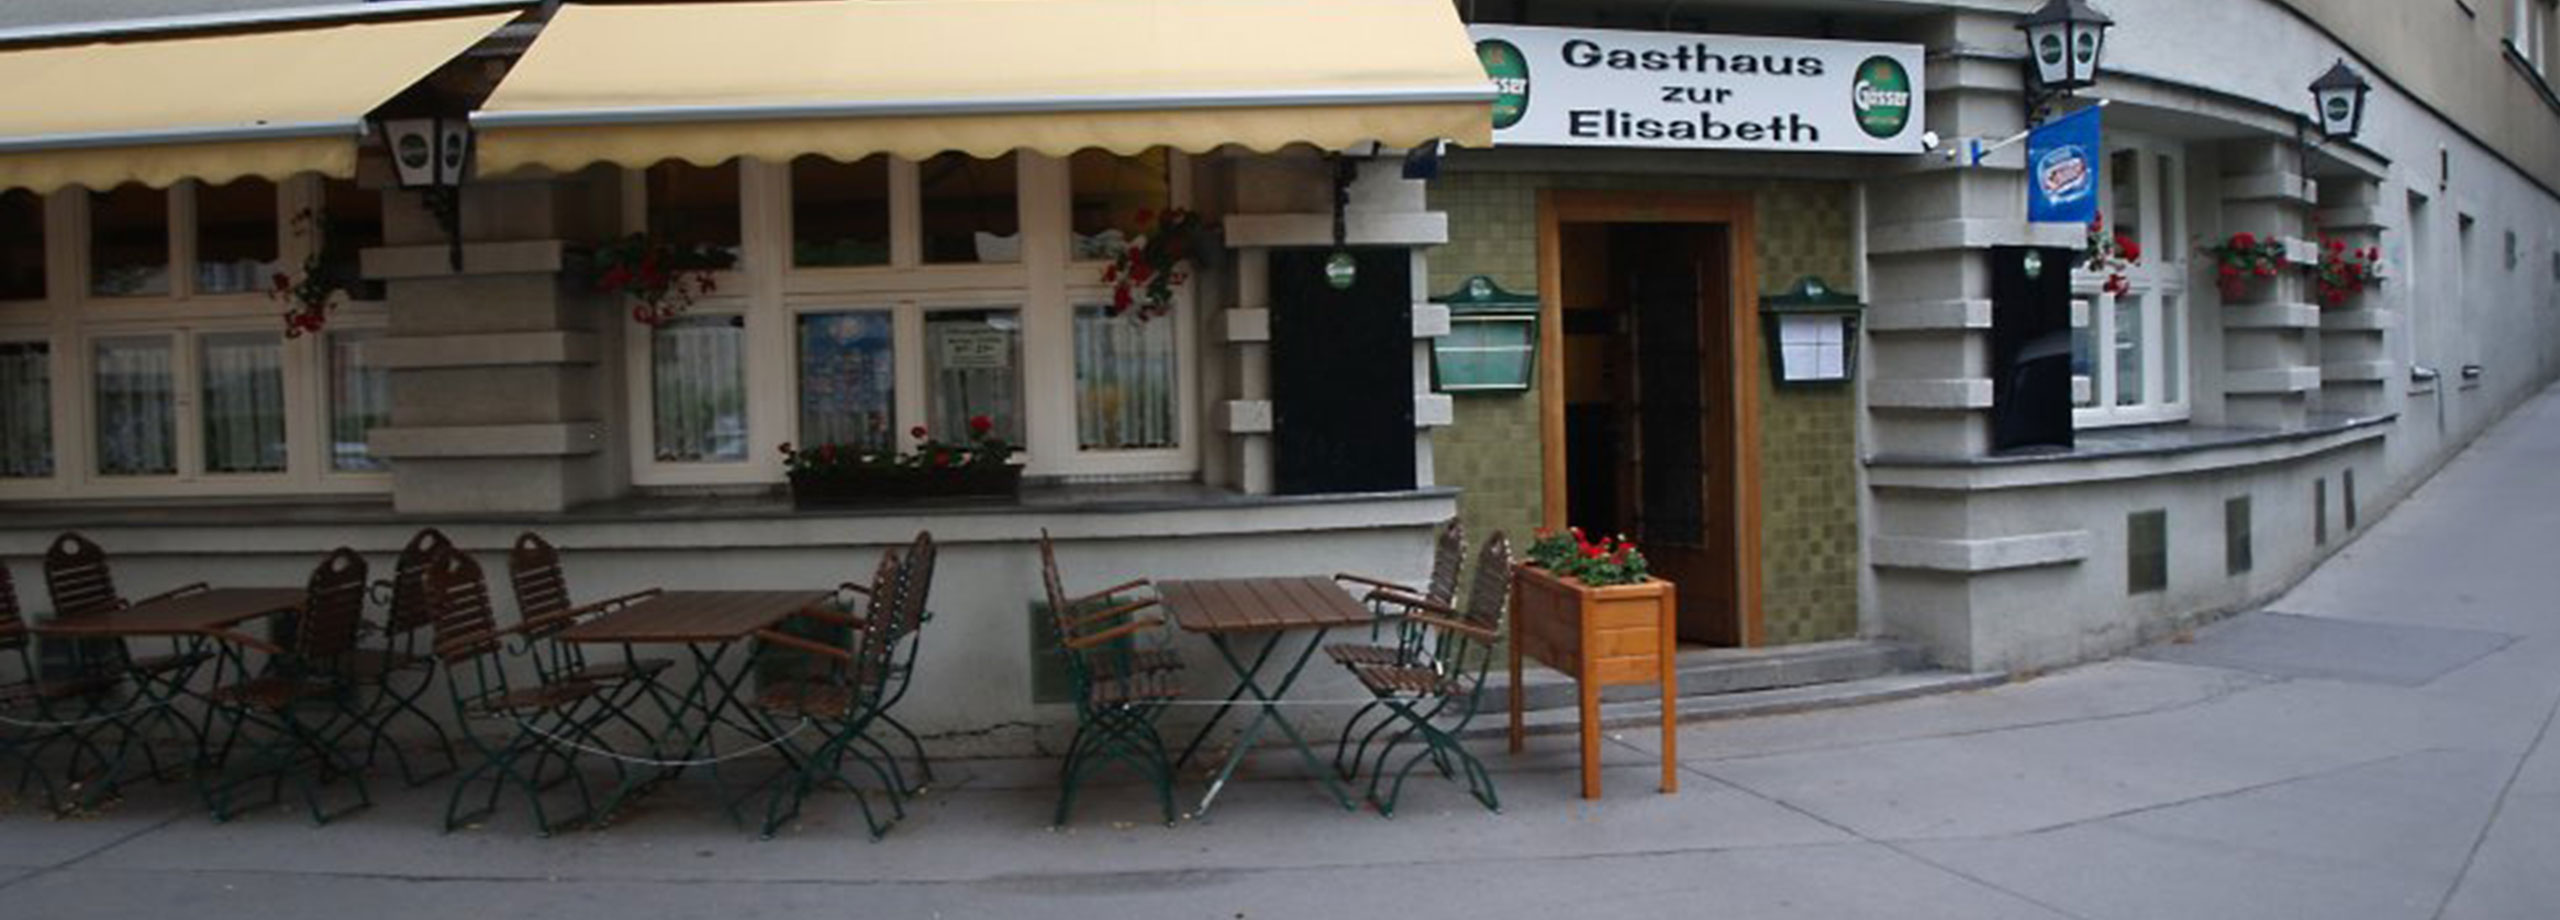 Gasthaus_Elisabeth_1050_Wien